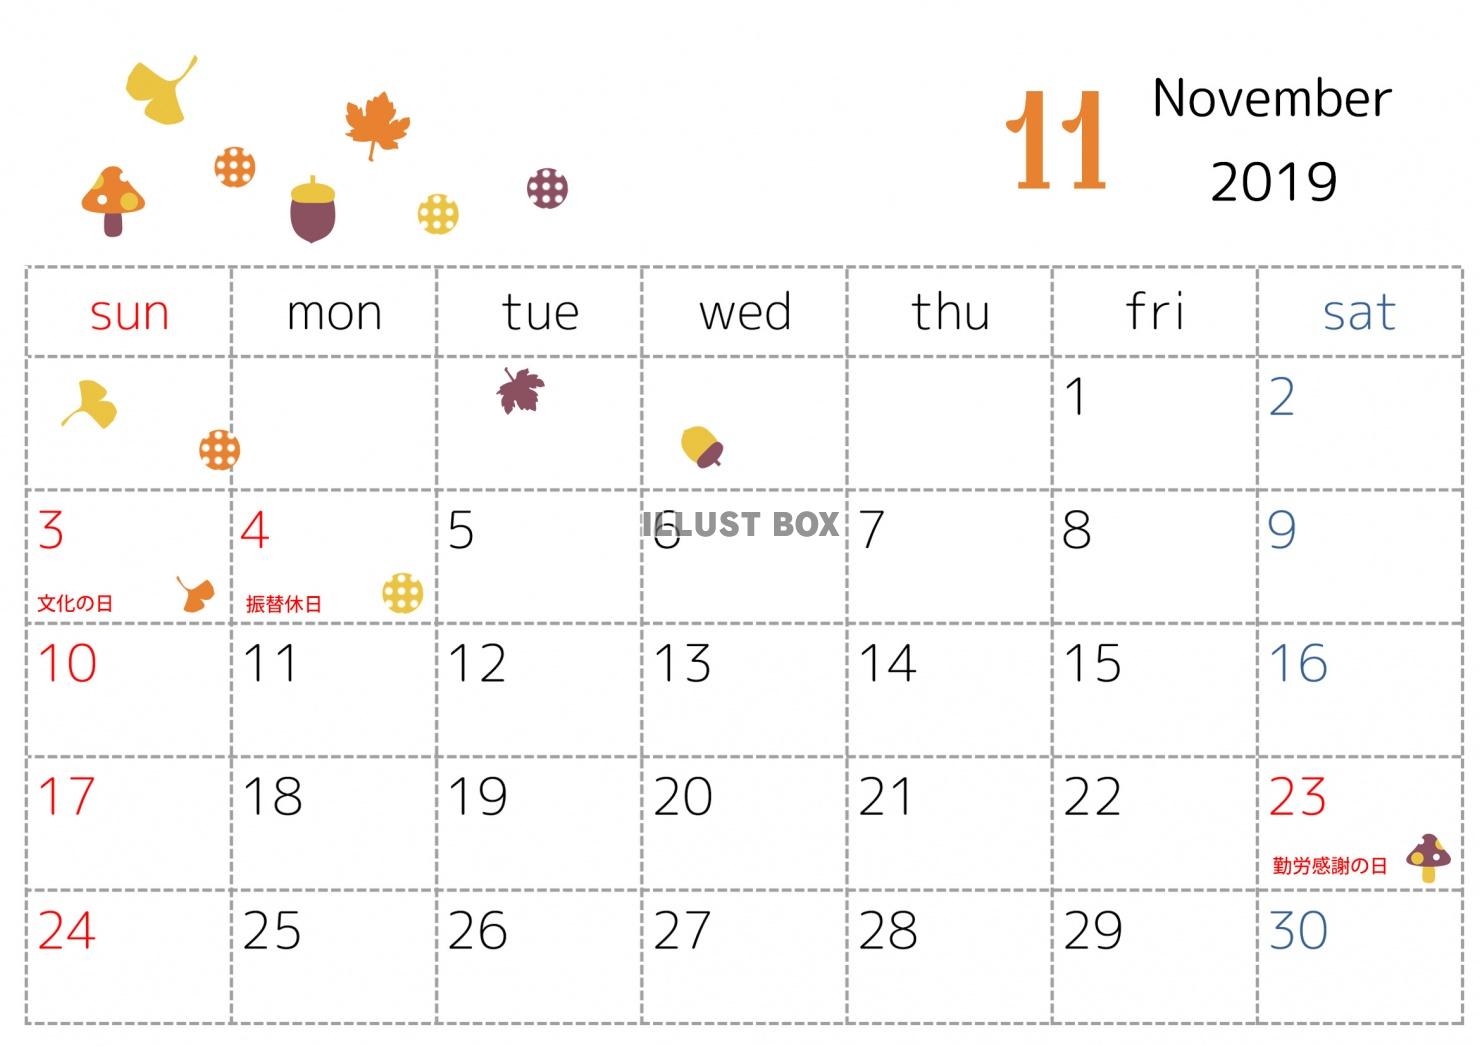 三十 クランプ 満足させる 11 月 カレンダー 素材 I Marusho Jp